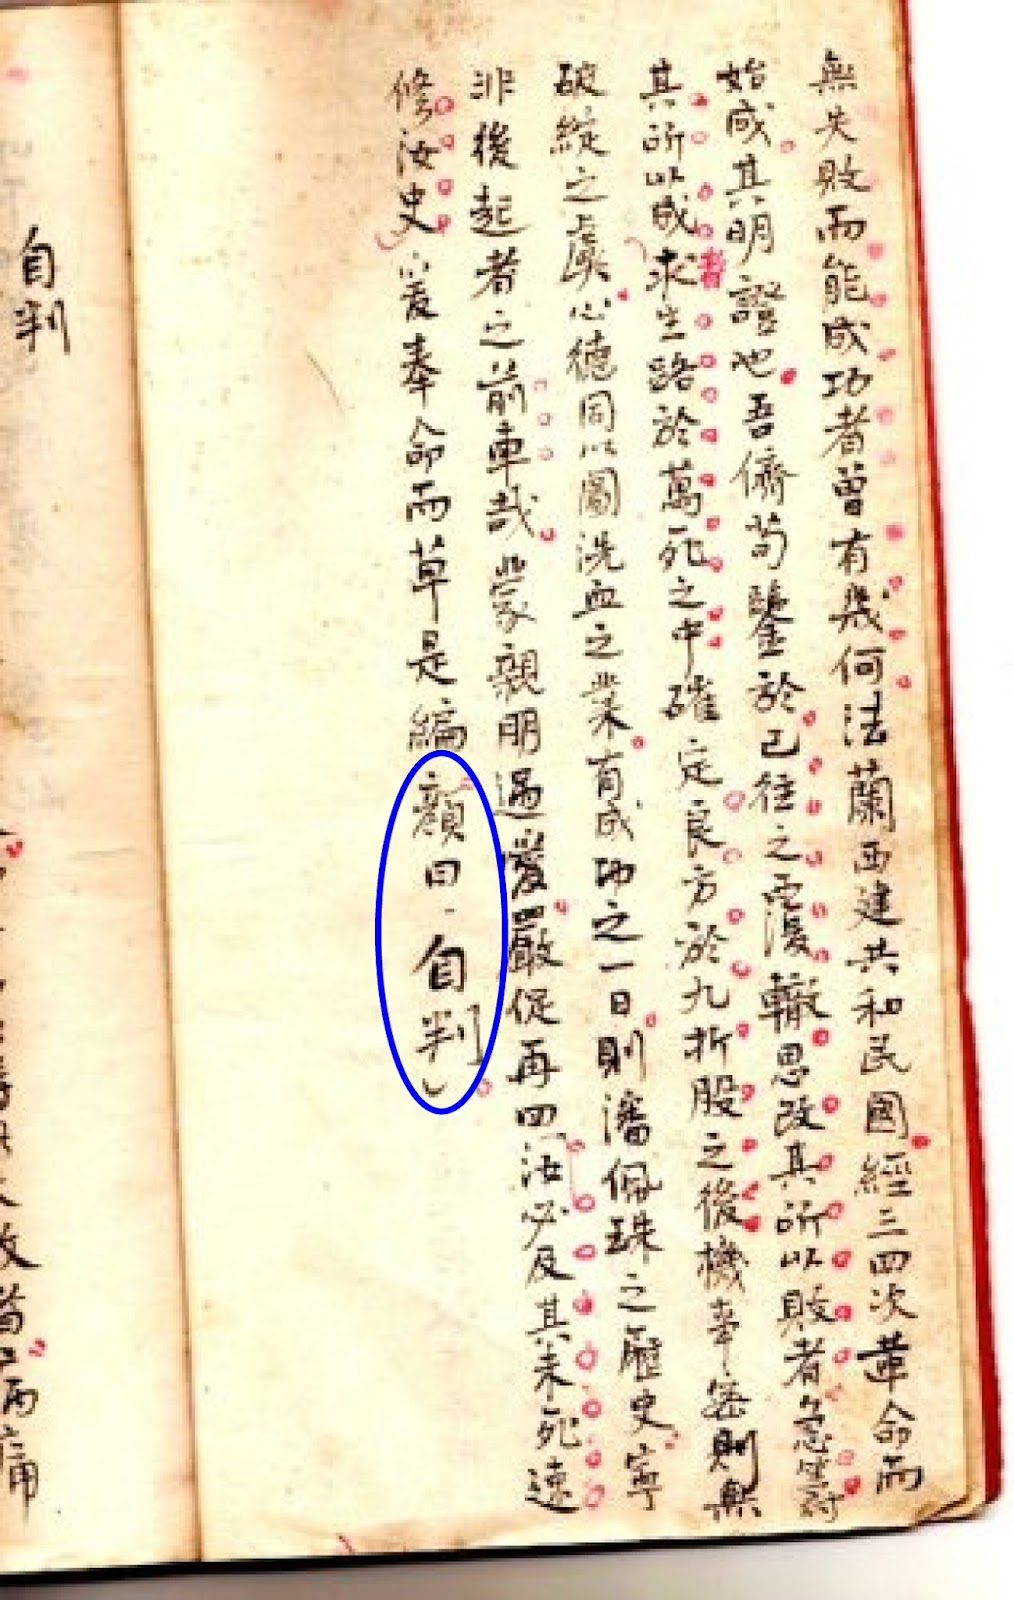 Phan Bội Châu dùng tựa đề Tự Phán trong phần chữ Hán.jpg